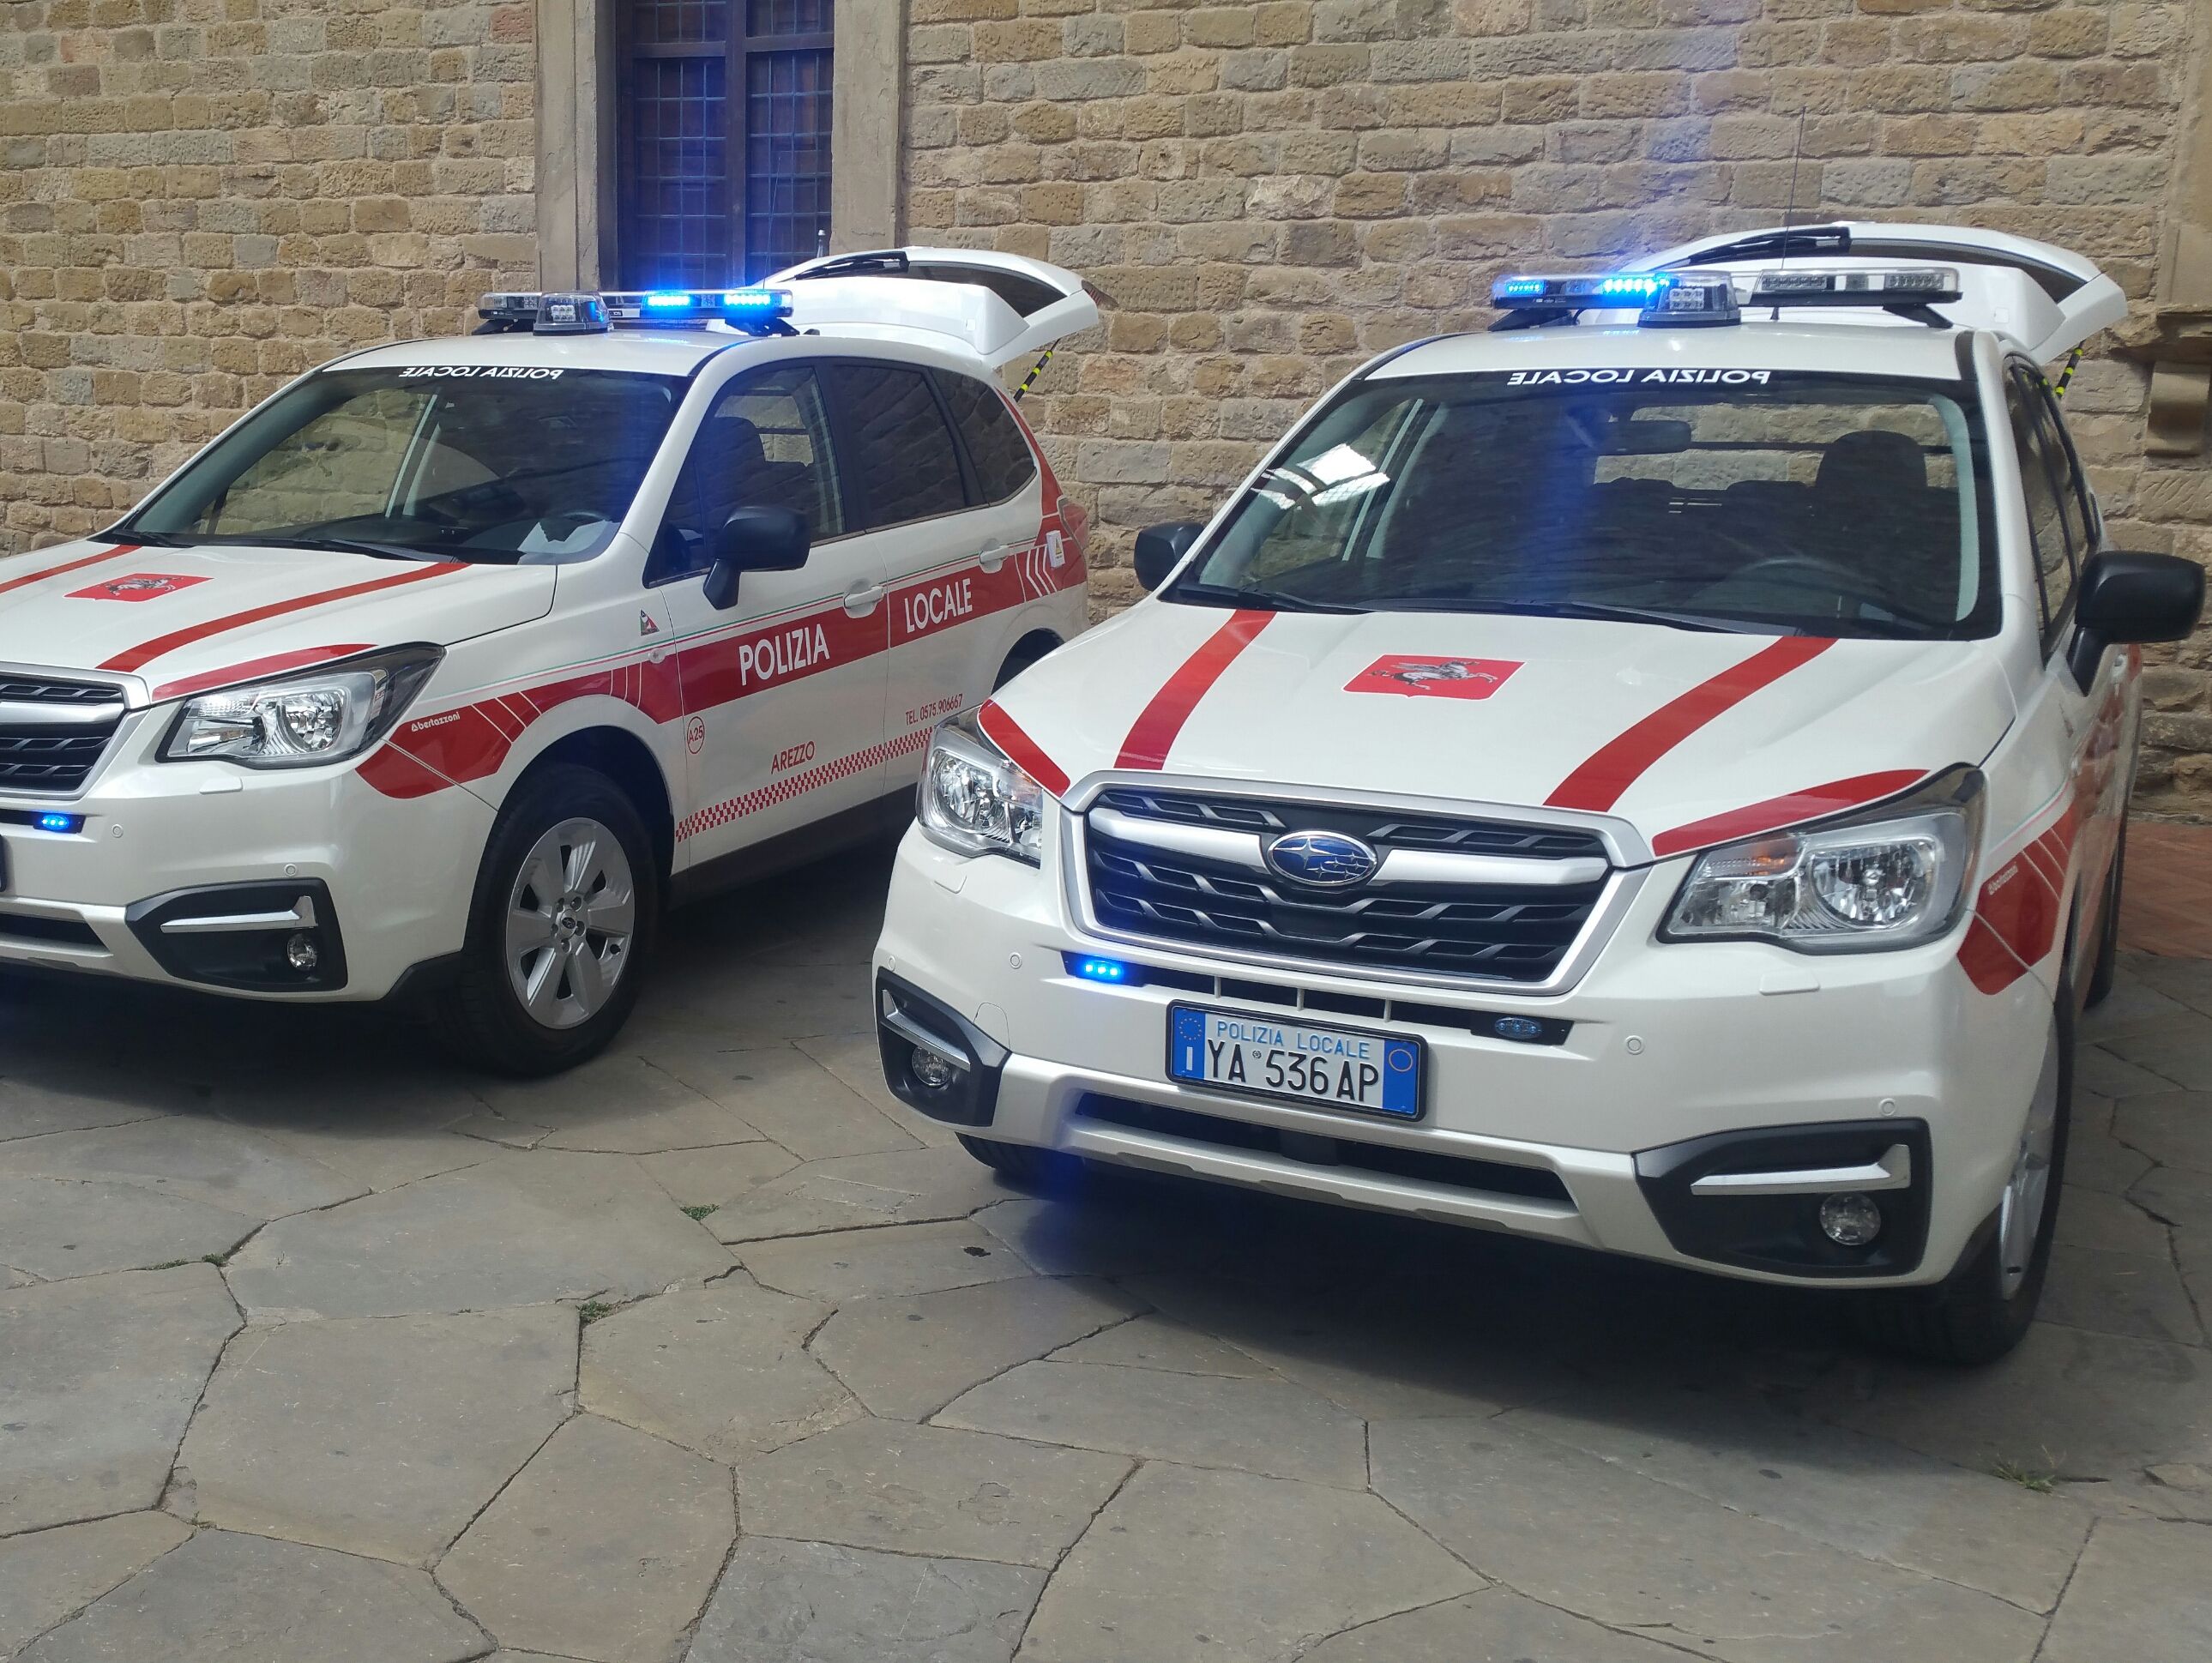 Il presidio della polizia locale in piazza Guido Monaco: nuovo avviso pubblico